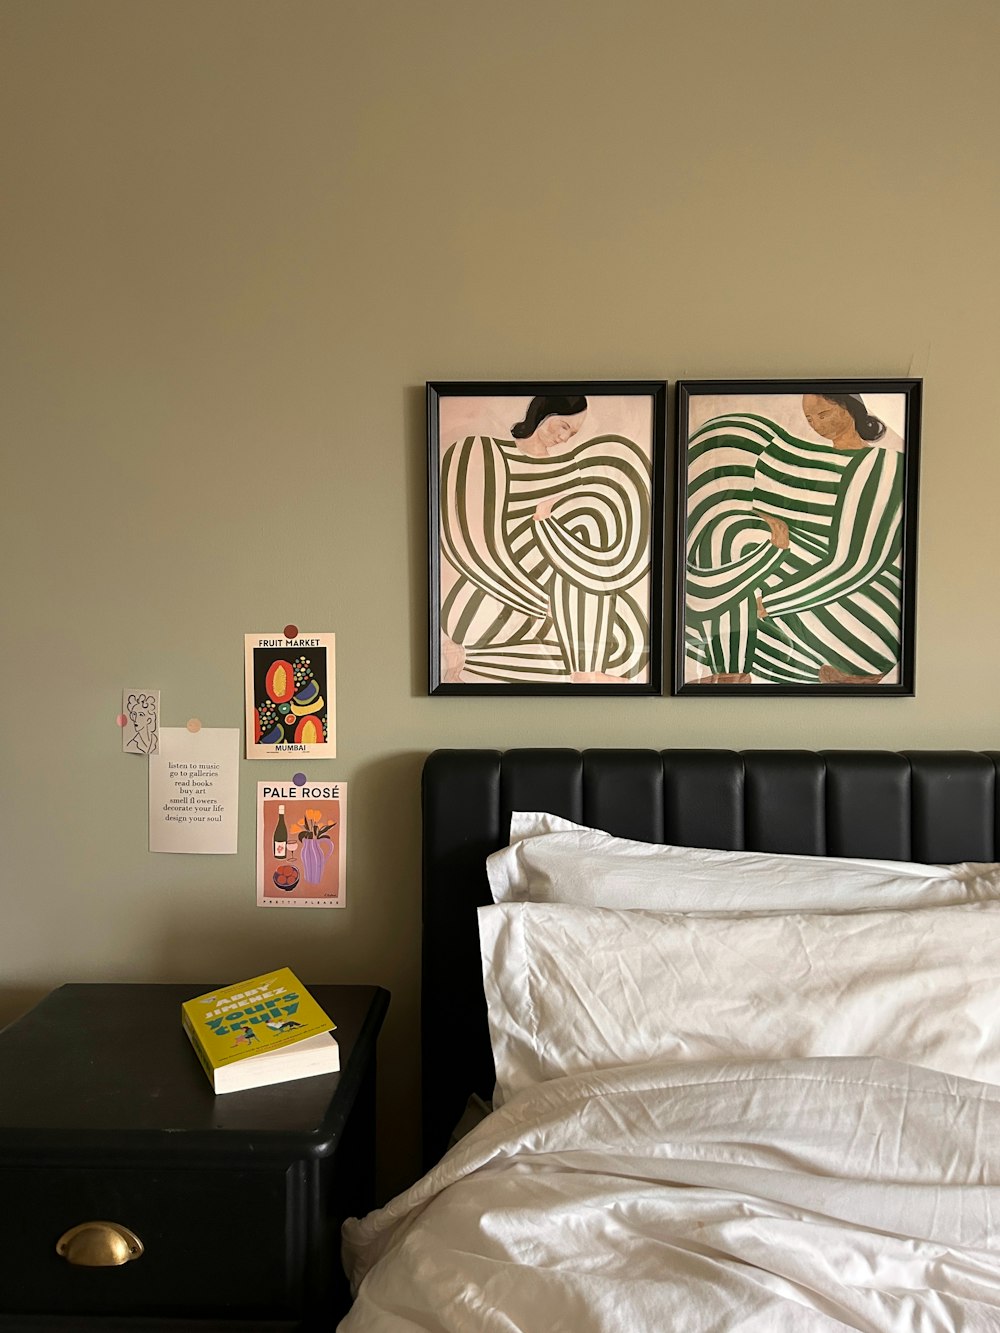 흰색 이불과 벽에 걸린 두 장의 그림이 있는 침대